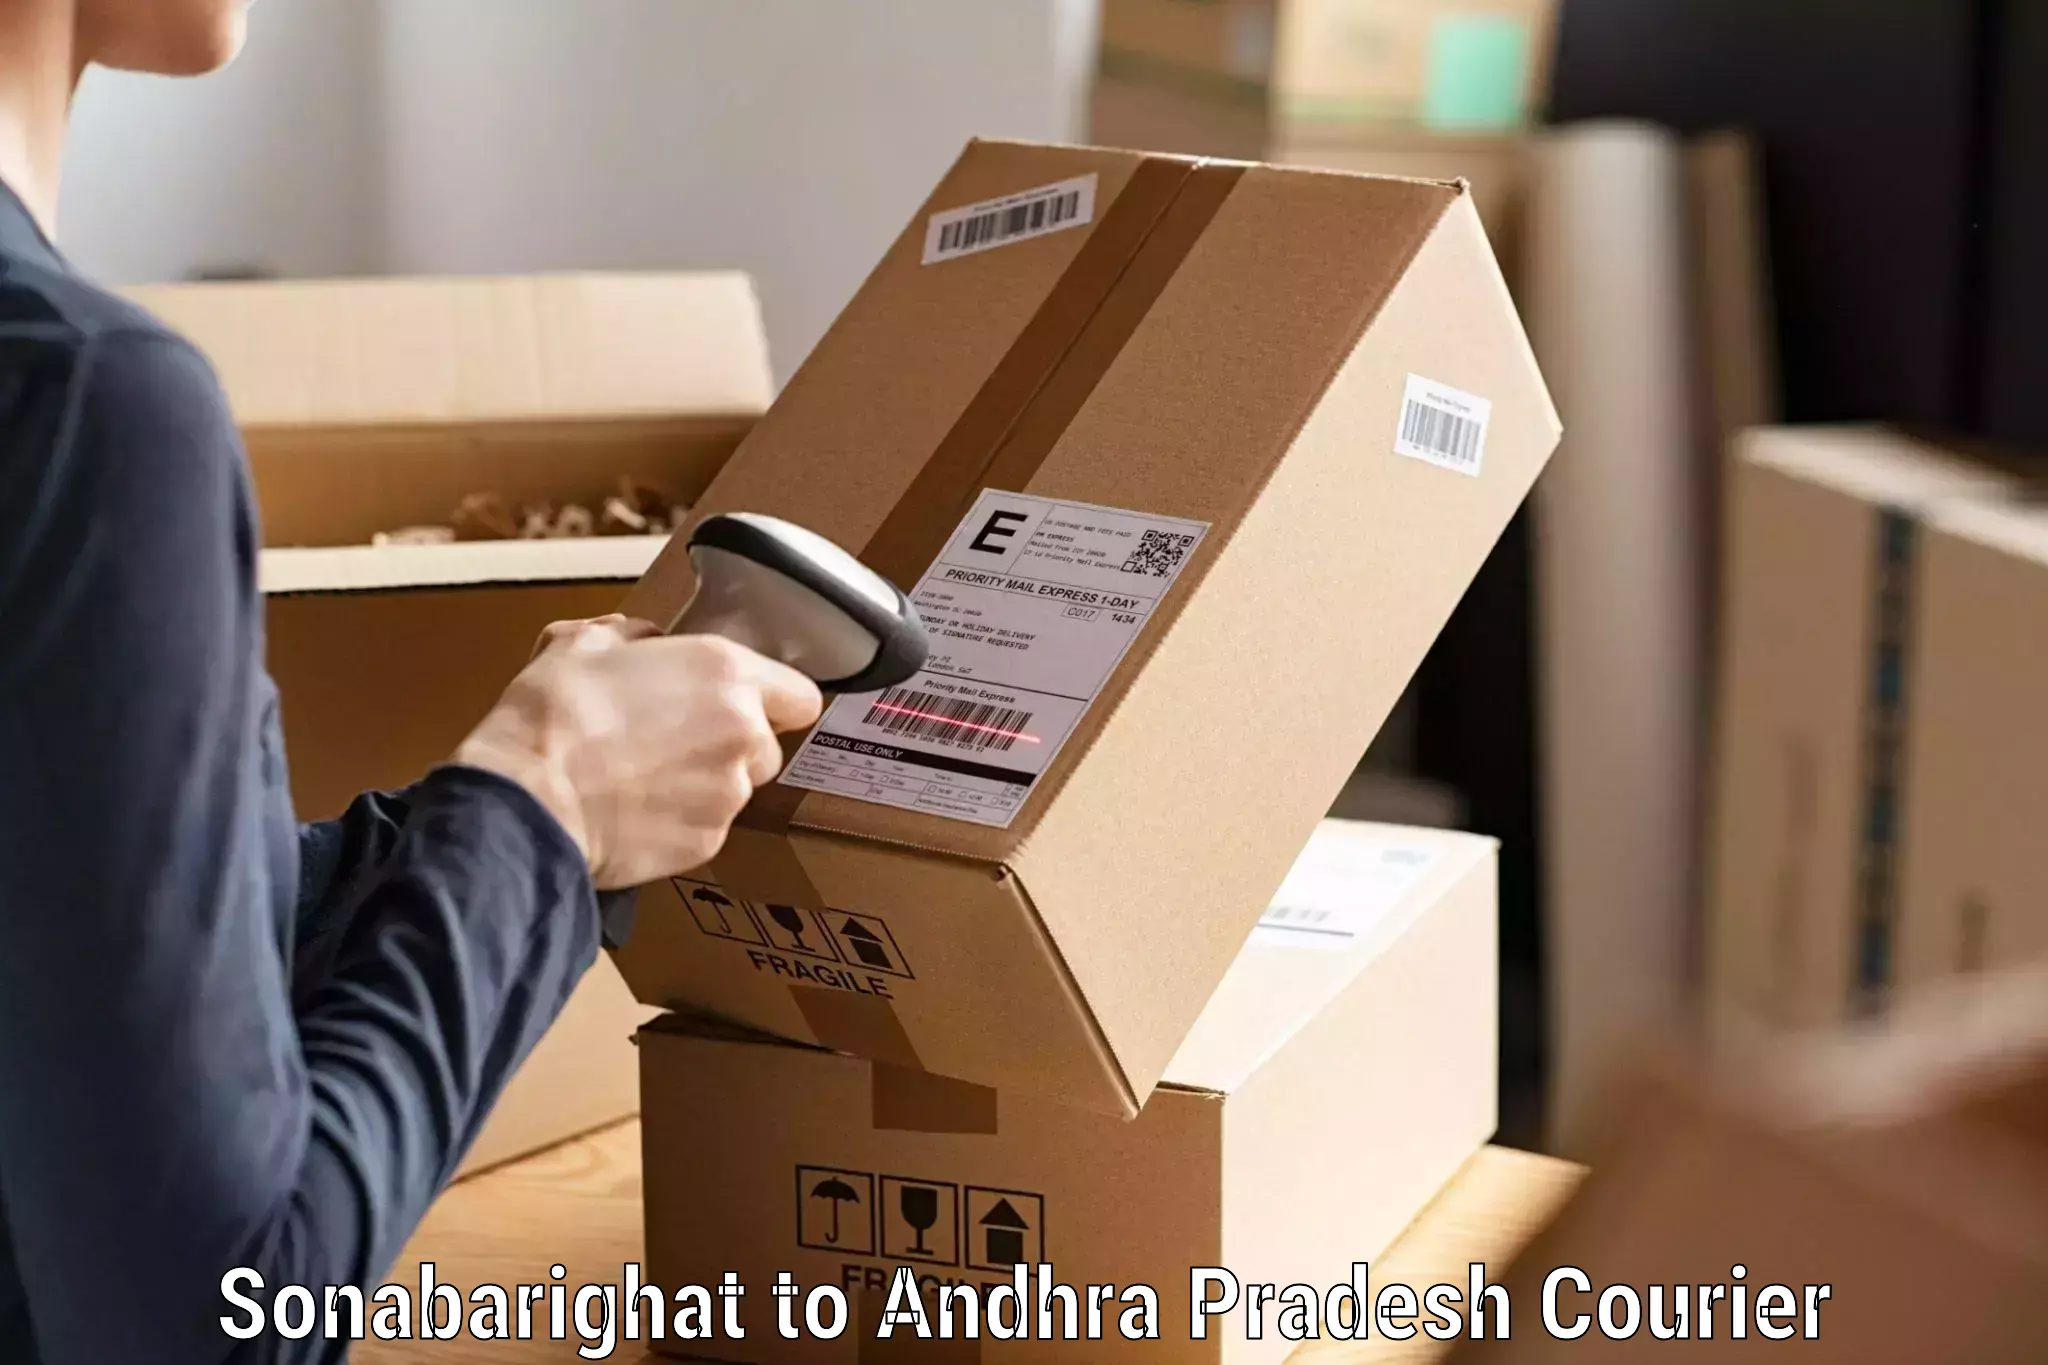 Professional courier handling Sonabarighat to Bheemunipatnam